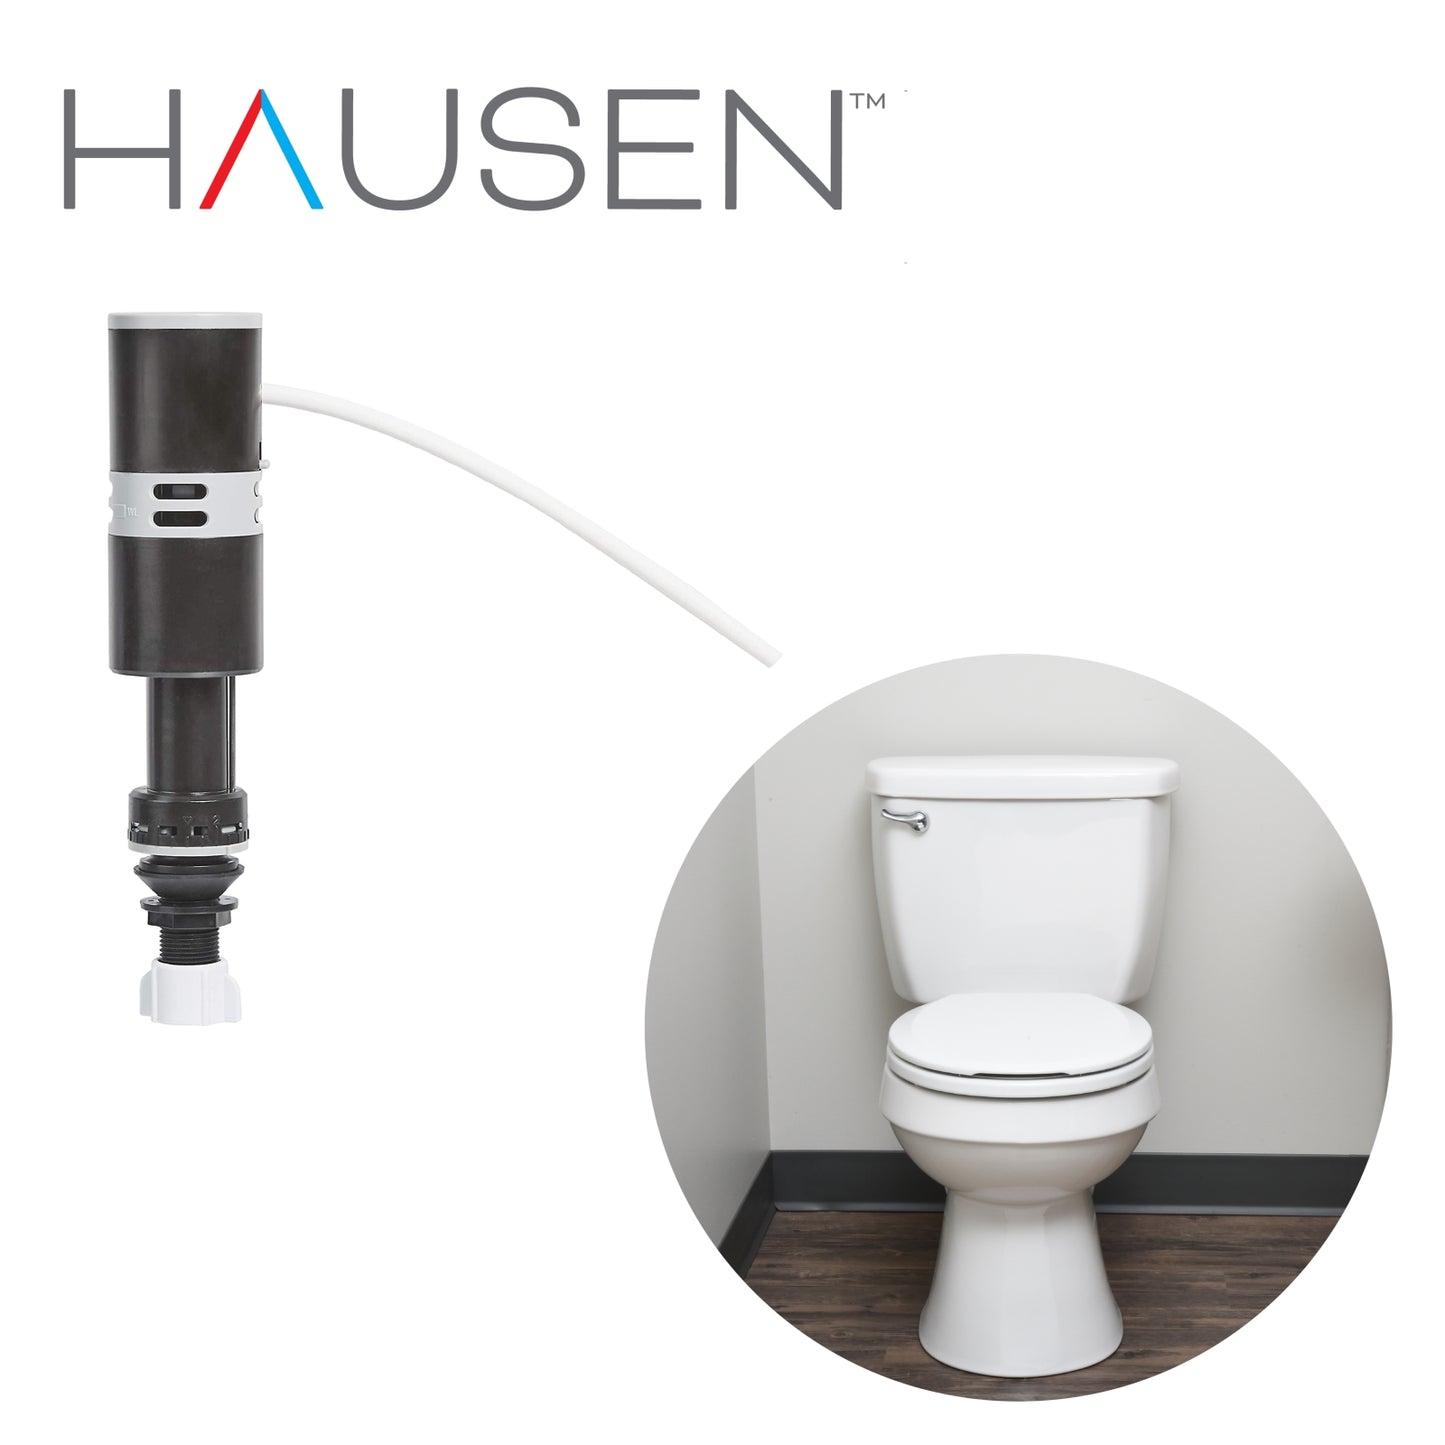 Hausen Quick-Install Universal Toilet Fill Valve